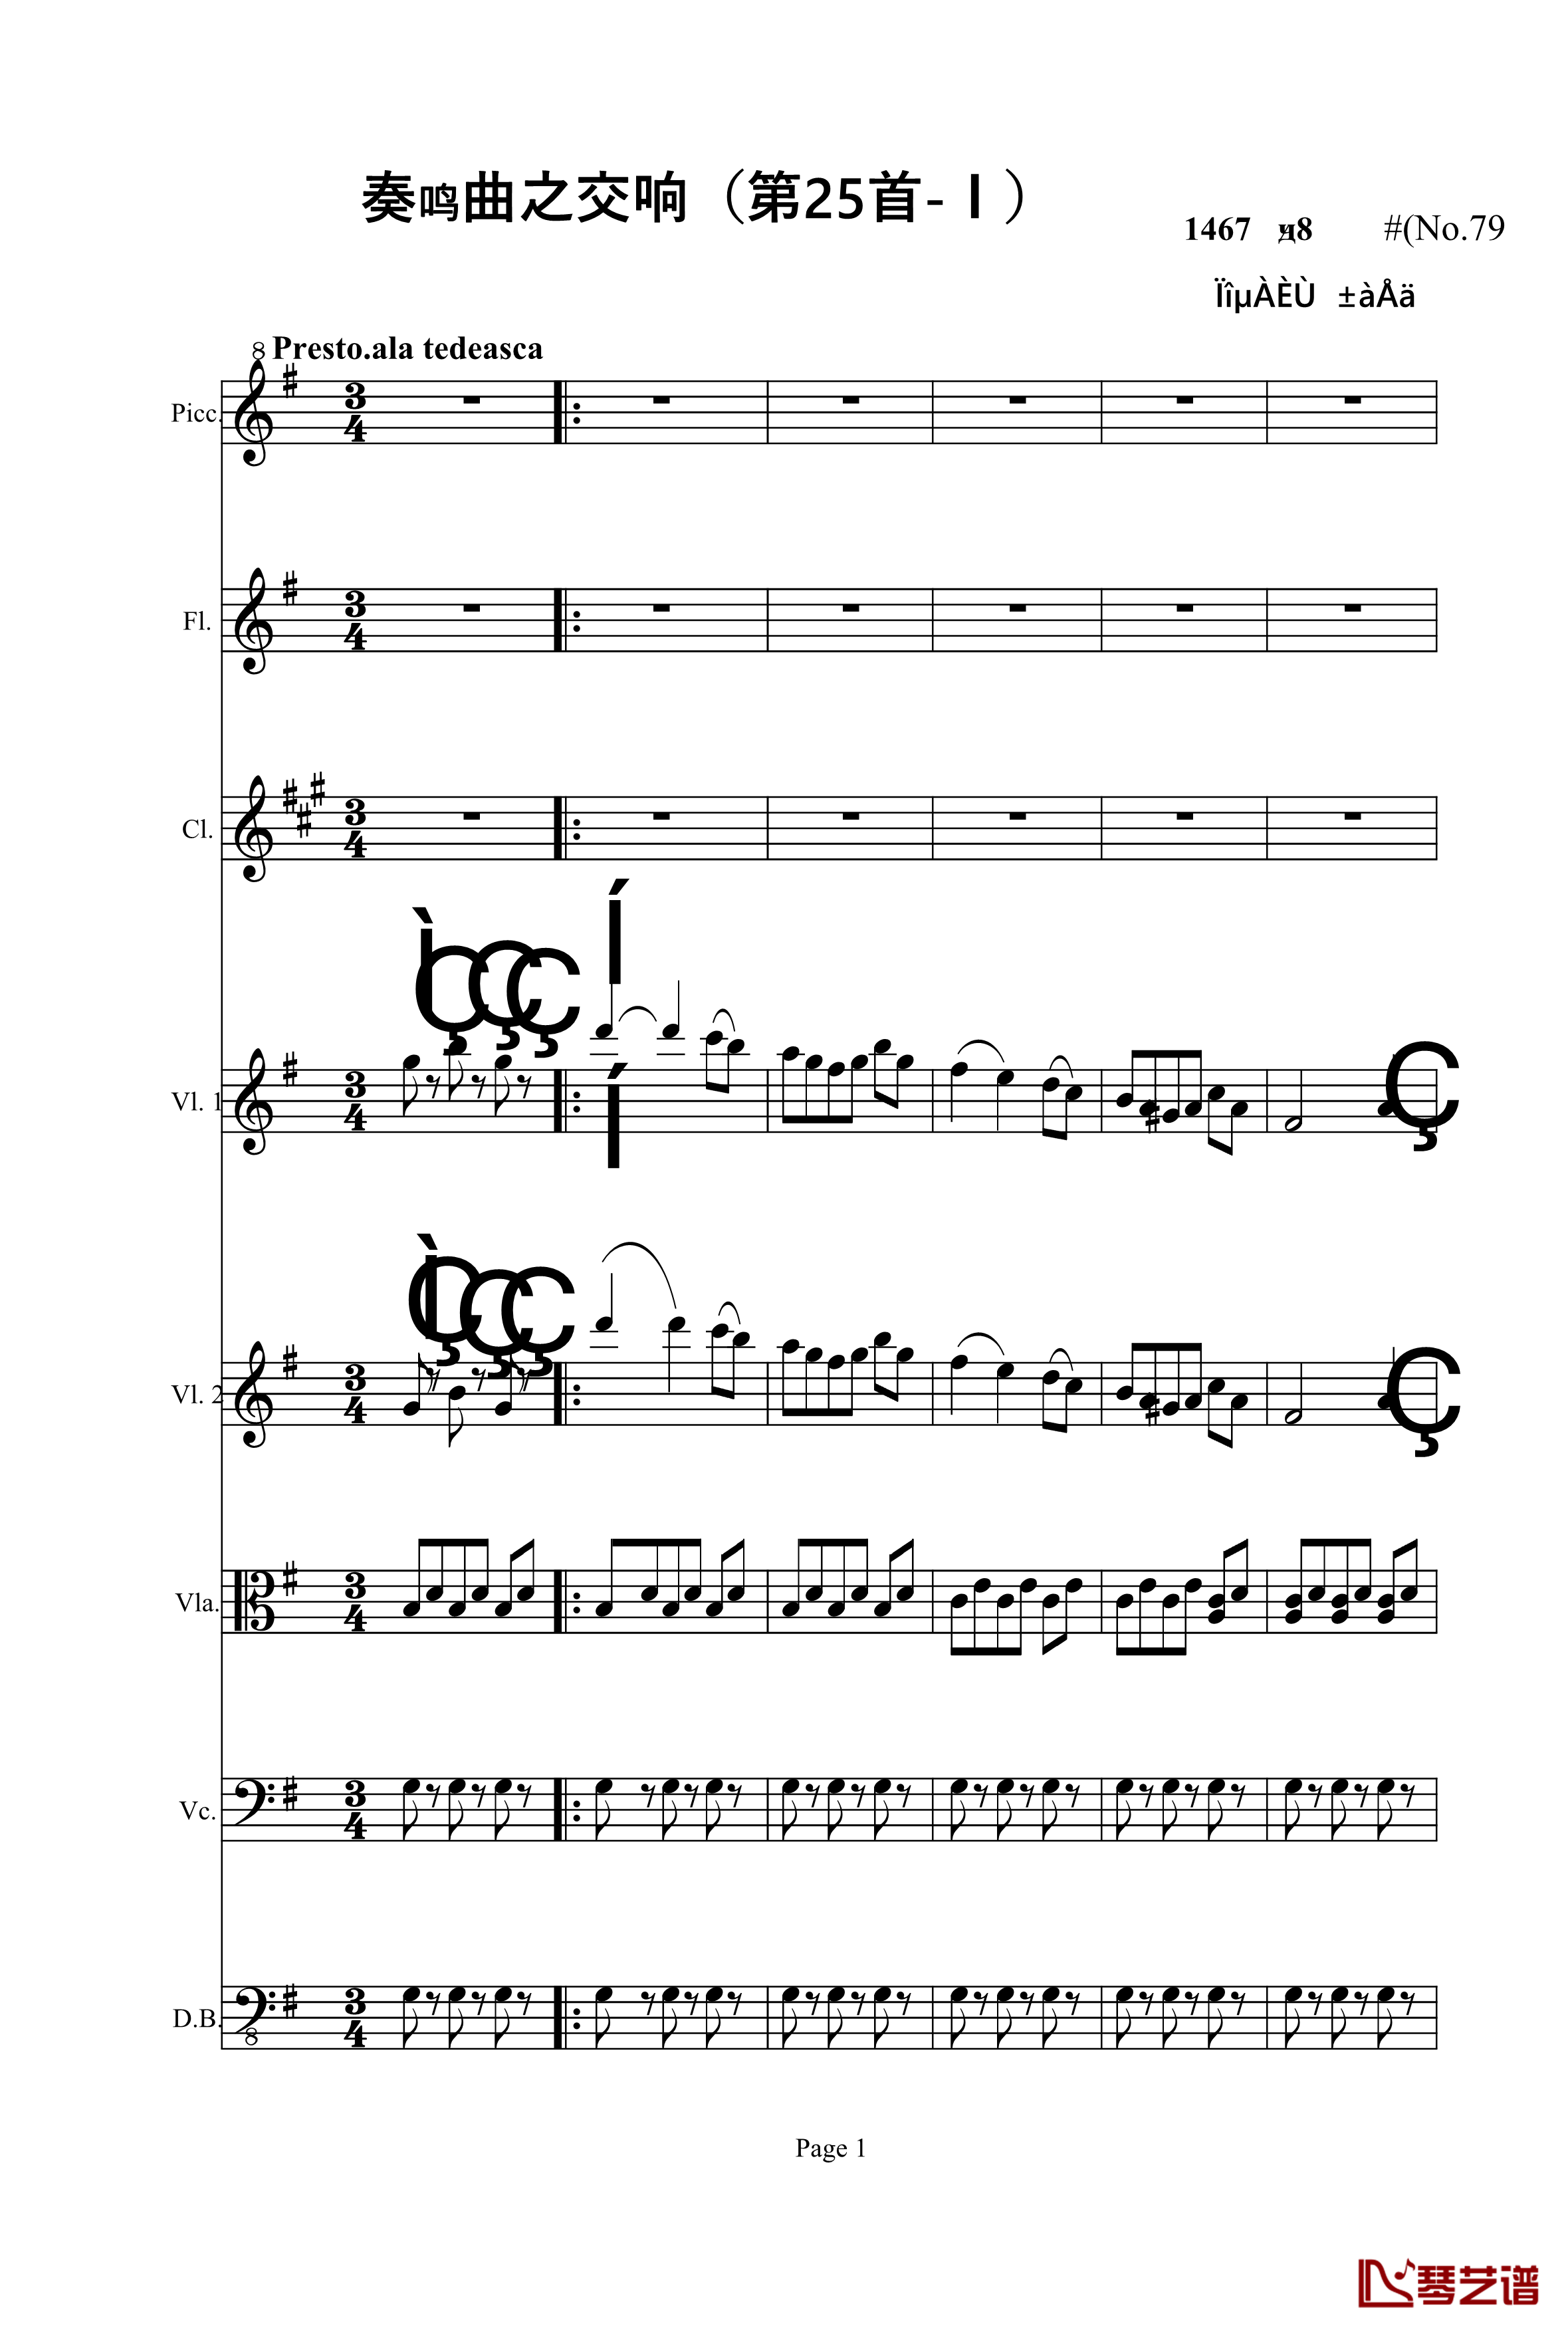 奏鸣曲之交响钢琴谱-第25首-Ⅰ-贝多芬-beethoven1